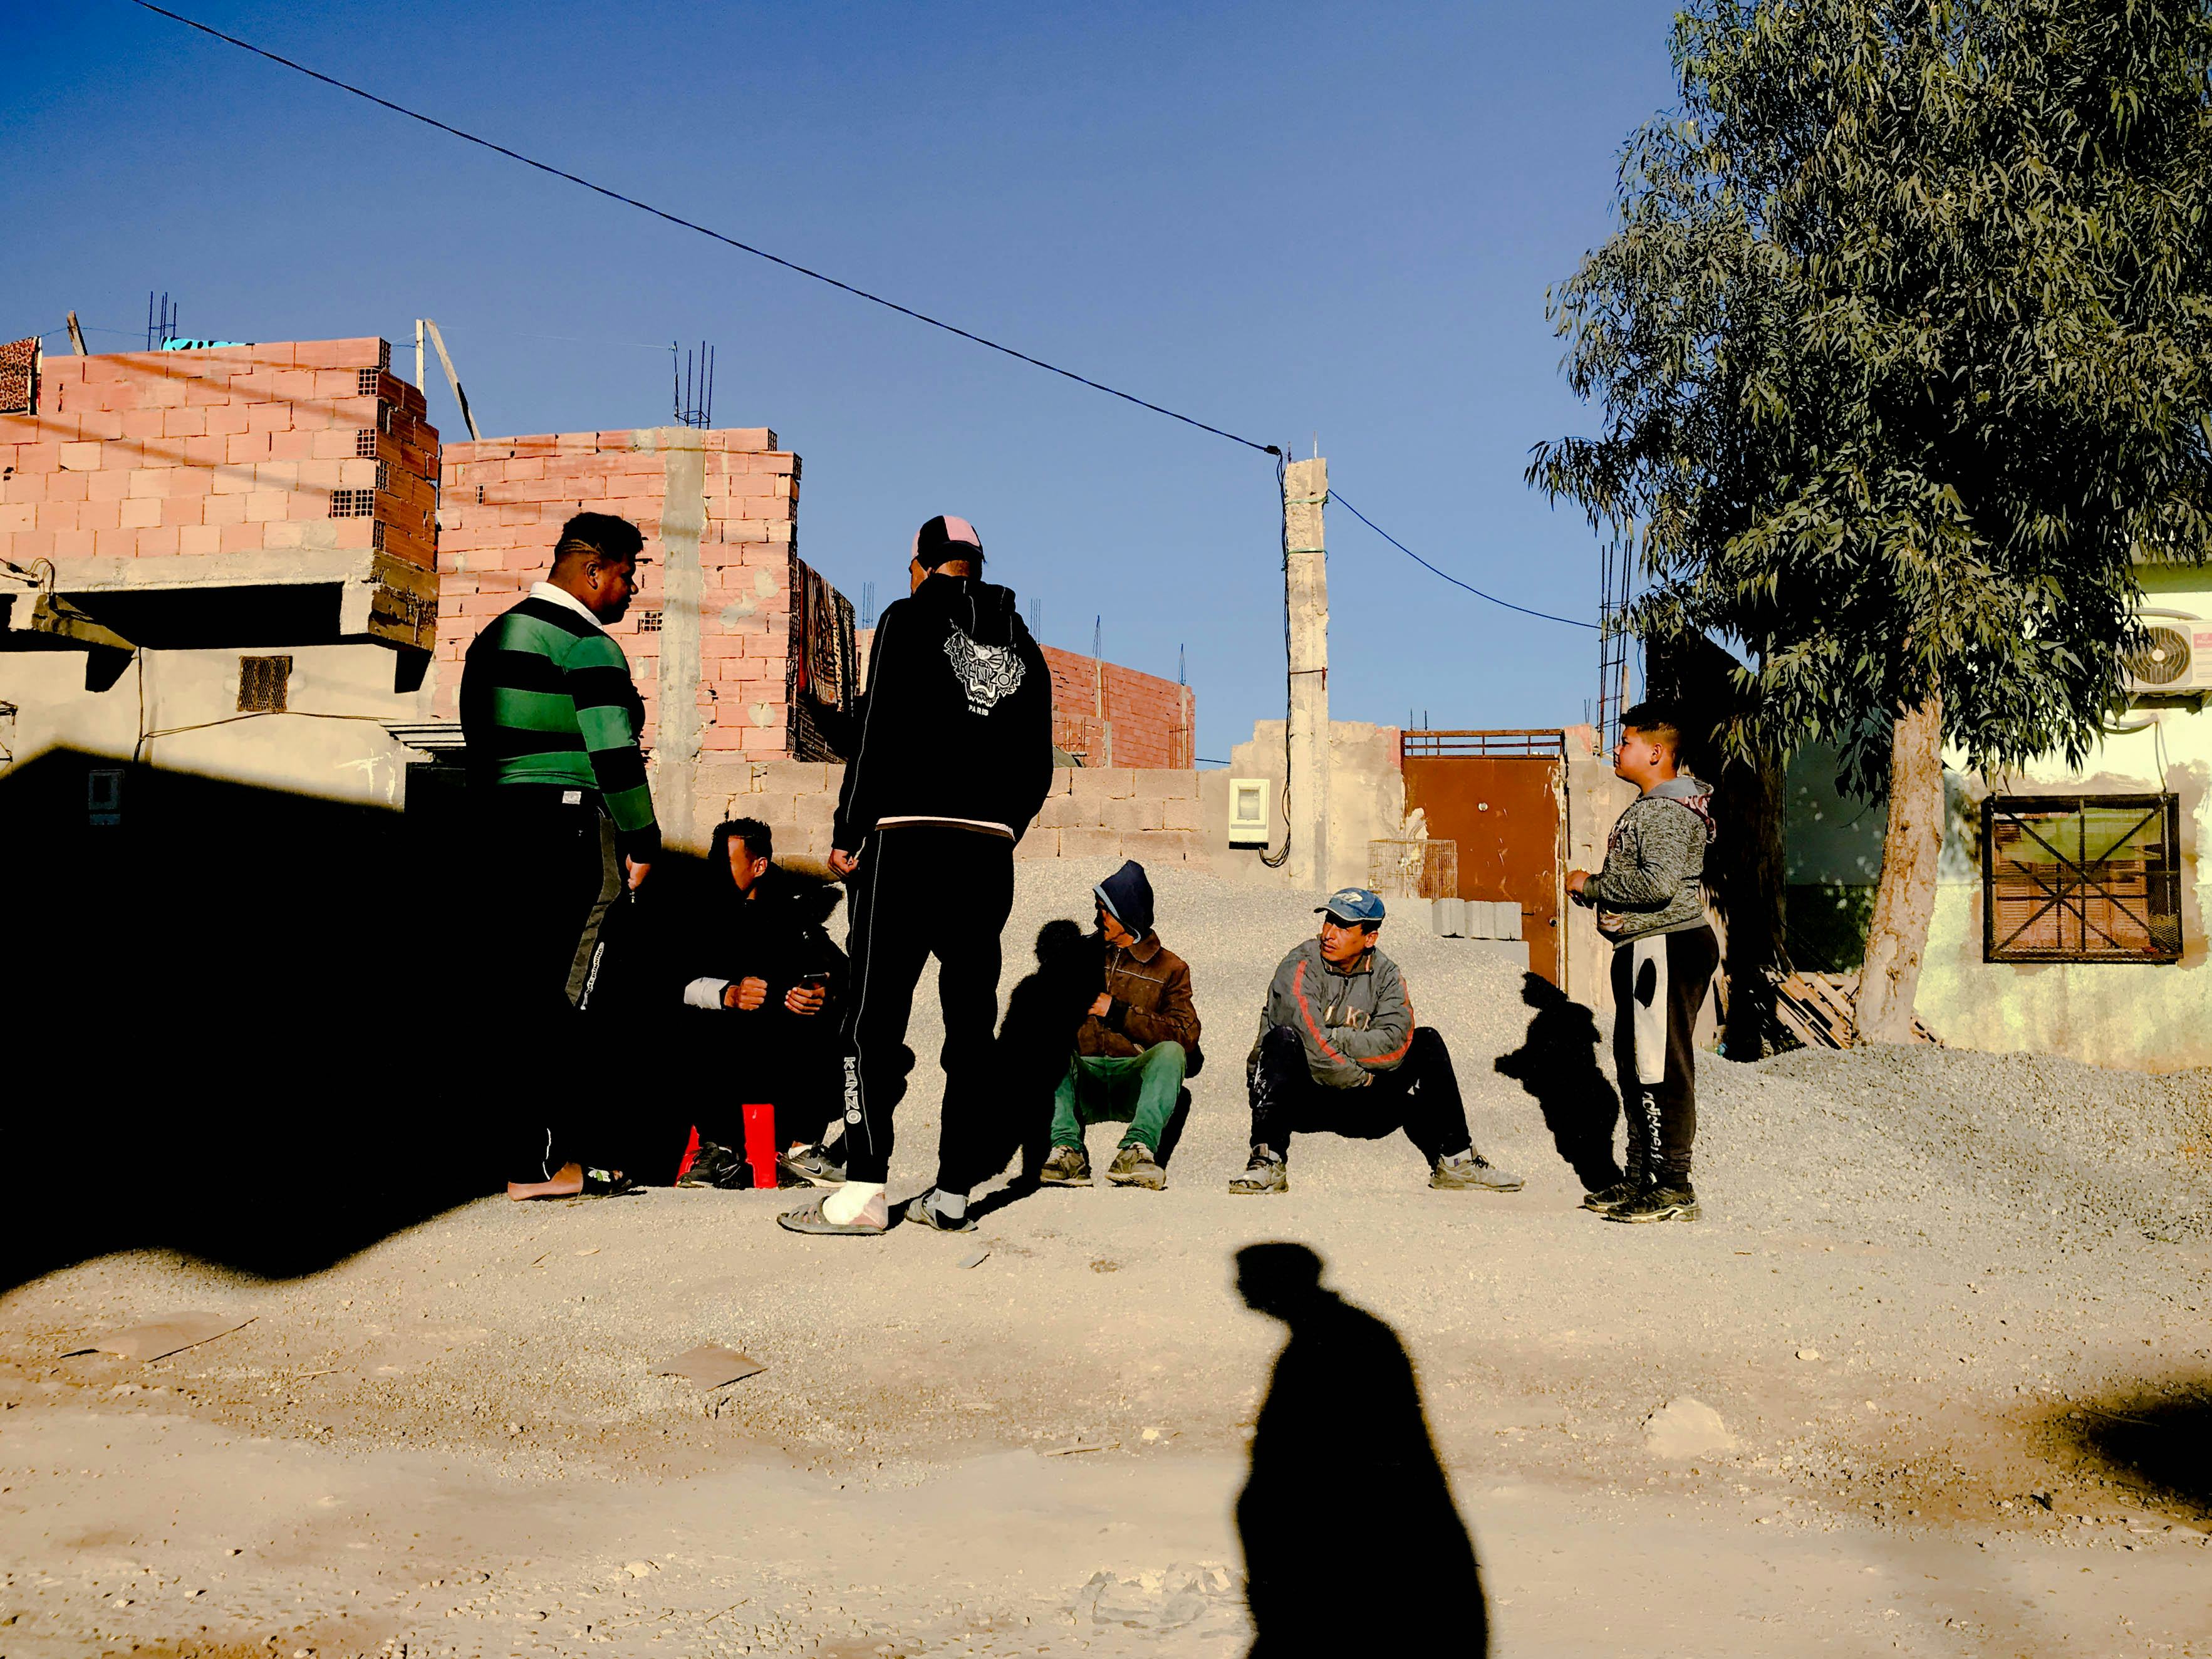 Picture of men on the street in Algeria. © Issam Larkat